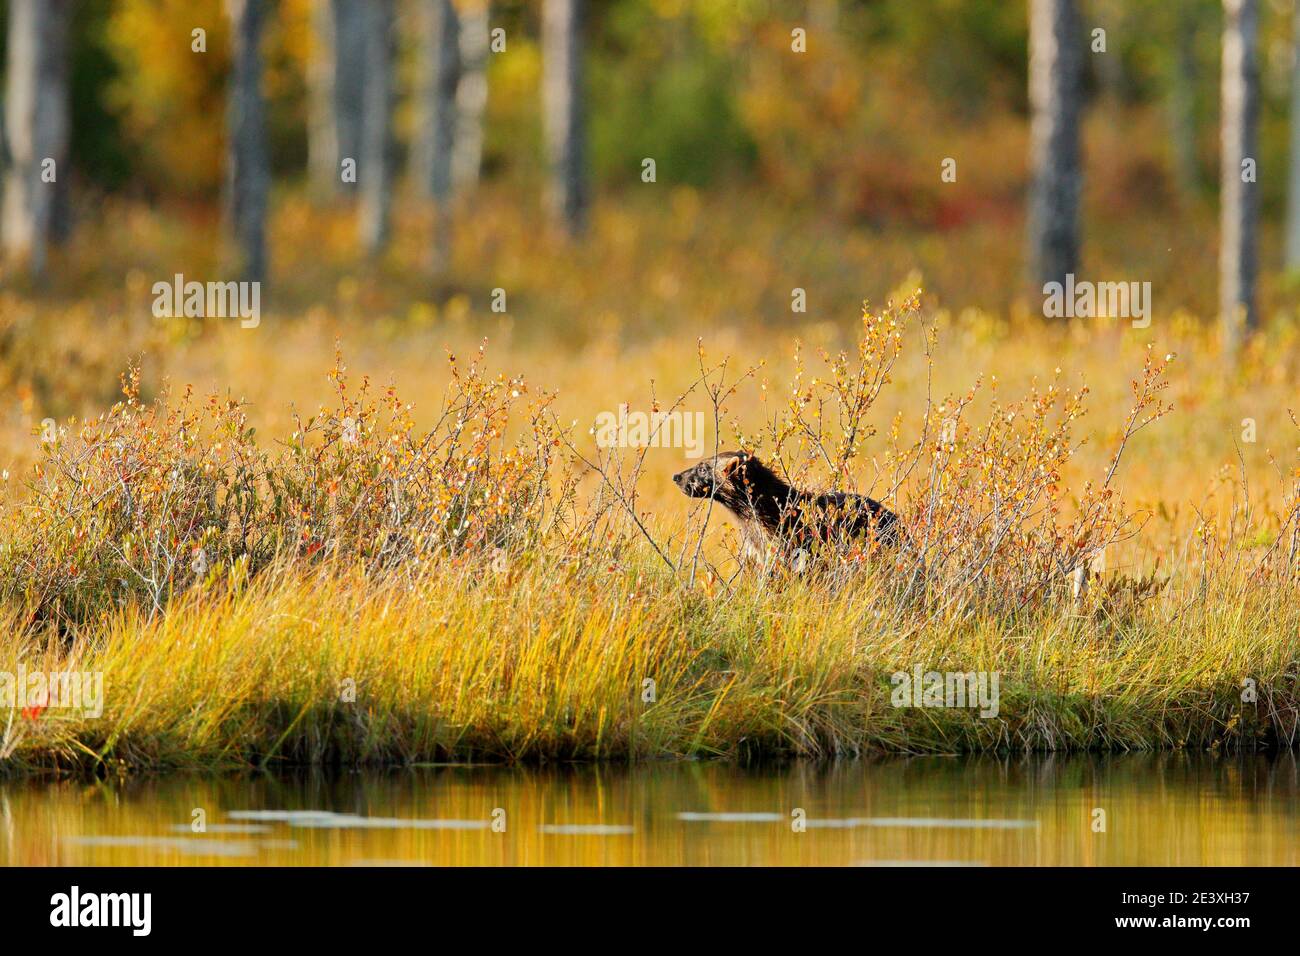 Wolverine im Herbst Wald See Lebensraum. Tier läuft im Herbst goldenes Gras. Wolverine Verhalten im Lebensraum, Finnland Taiga. Wildtierszene Stockfoto